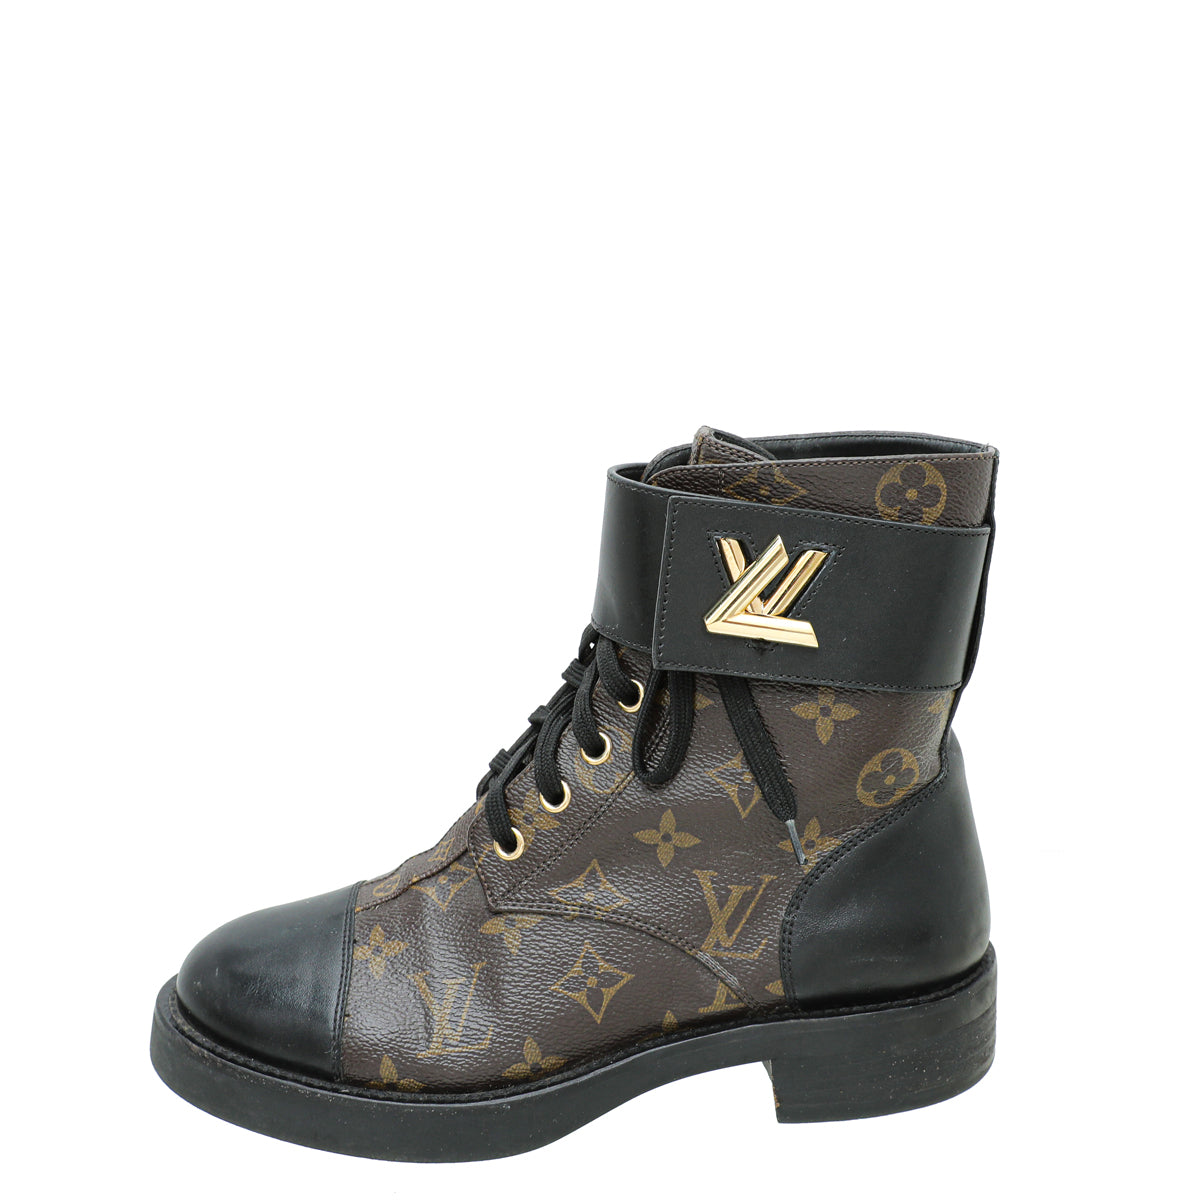 Louis Vuitton Monogram Wonderland Flat Ranger Boots - Black Boots, Shoes -  LOU202892